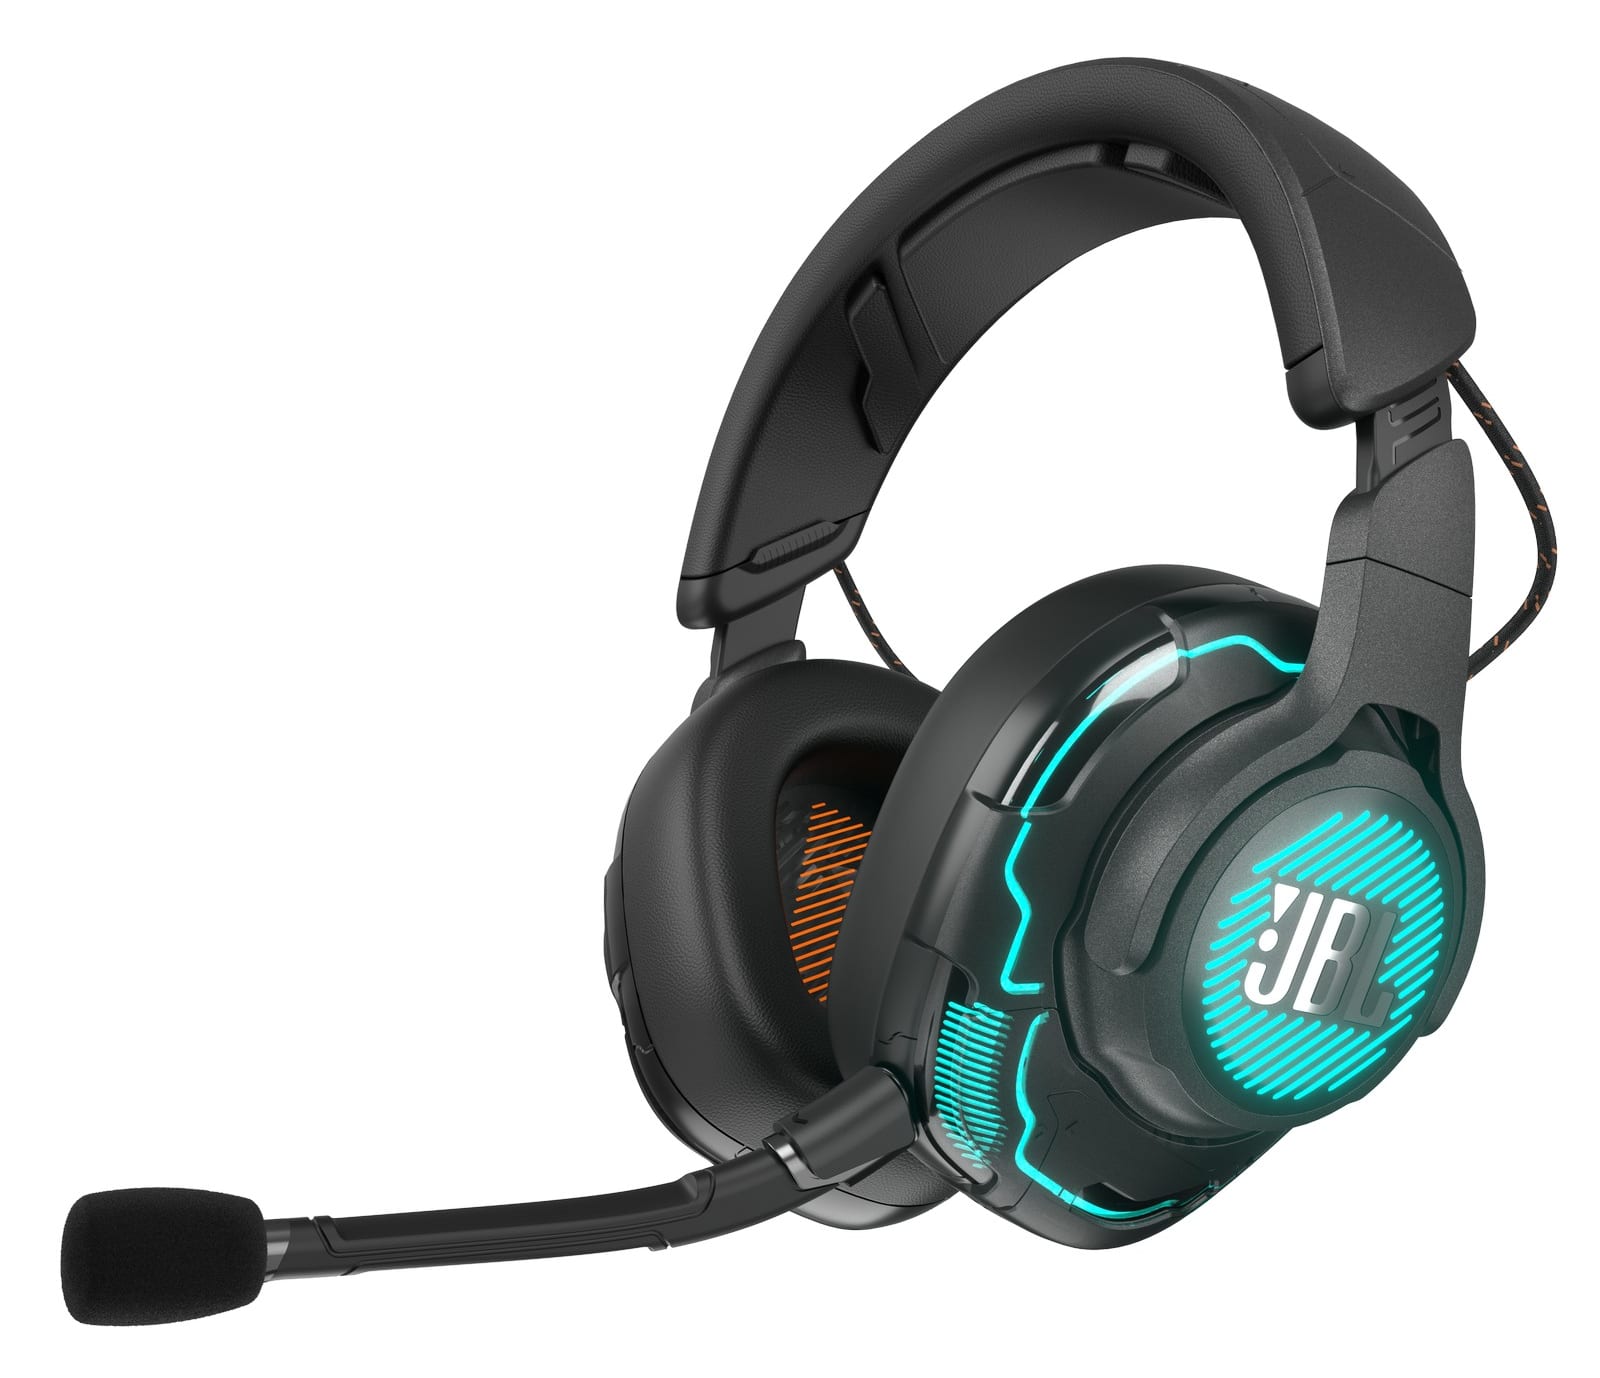 JBL Quantum Gaming headphones and speaker